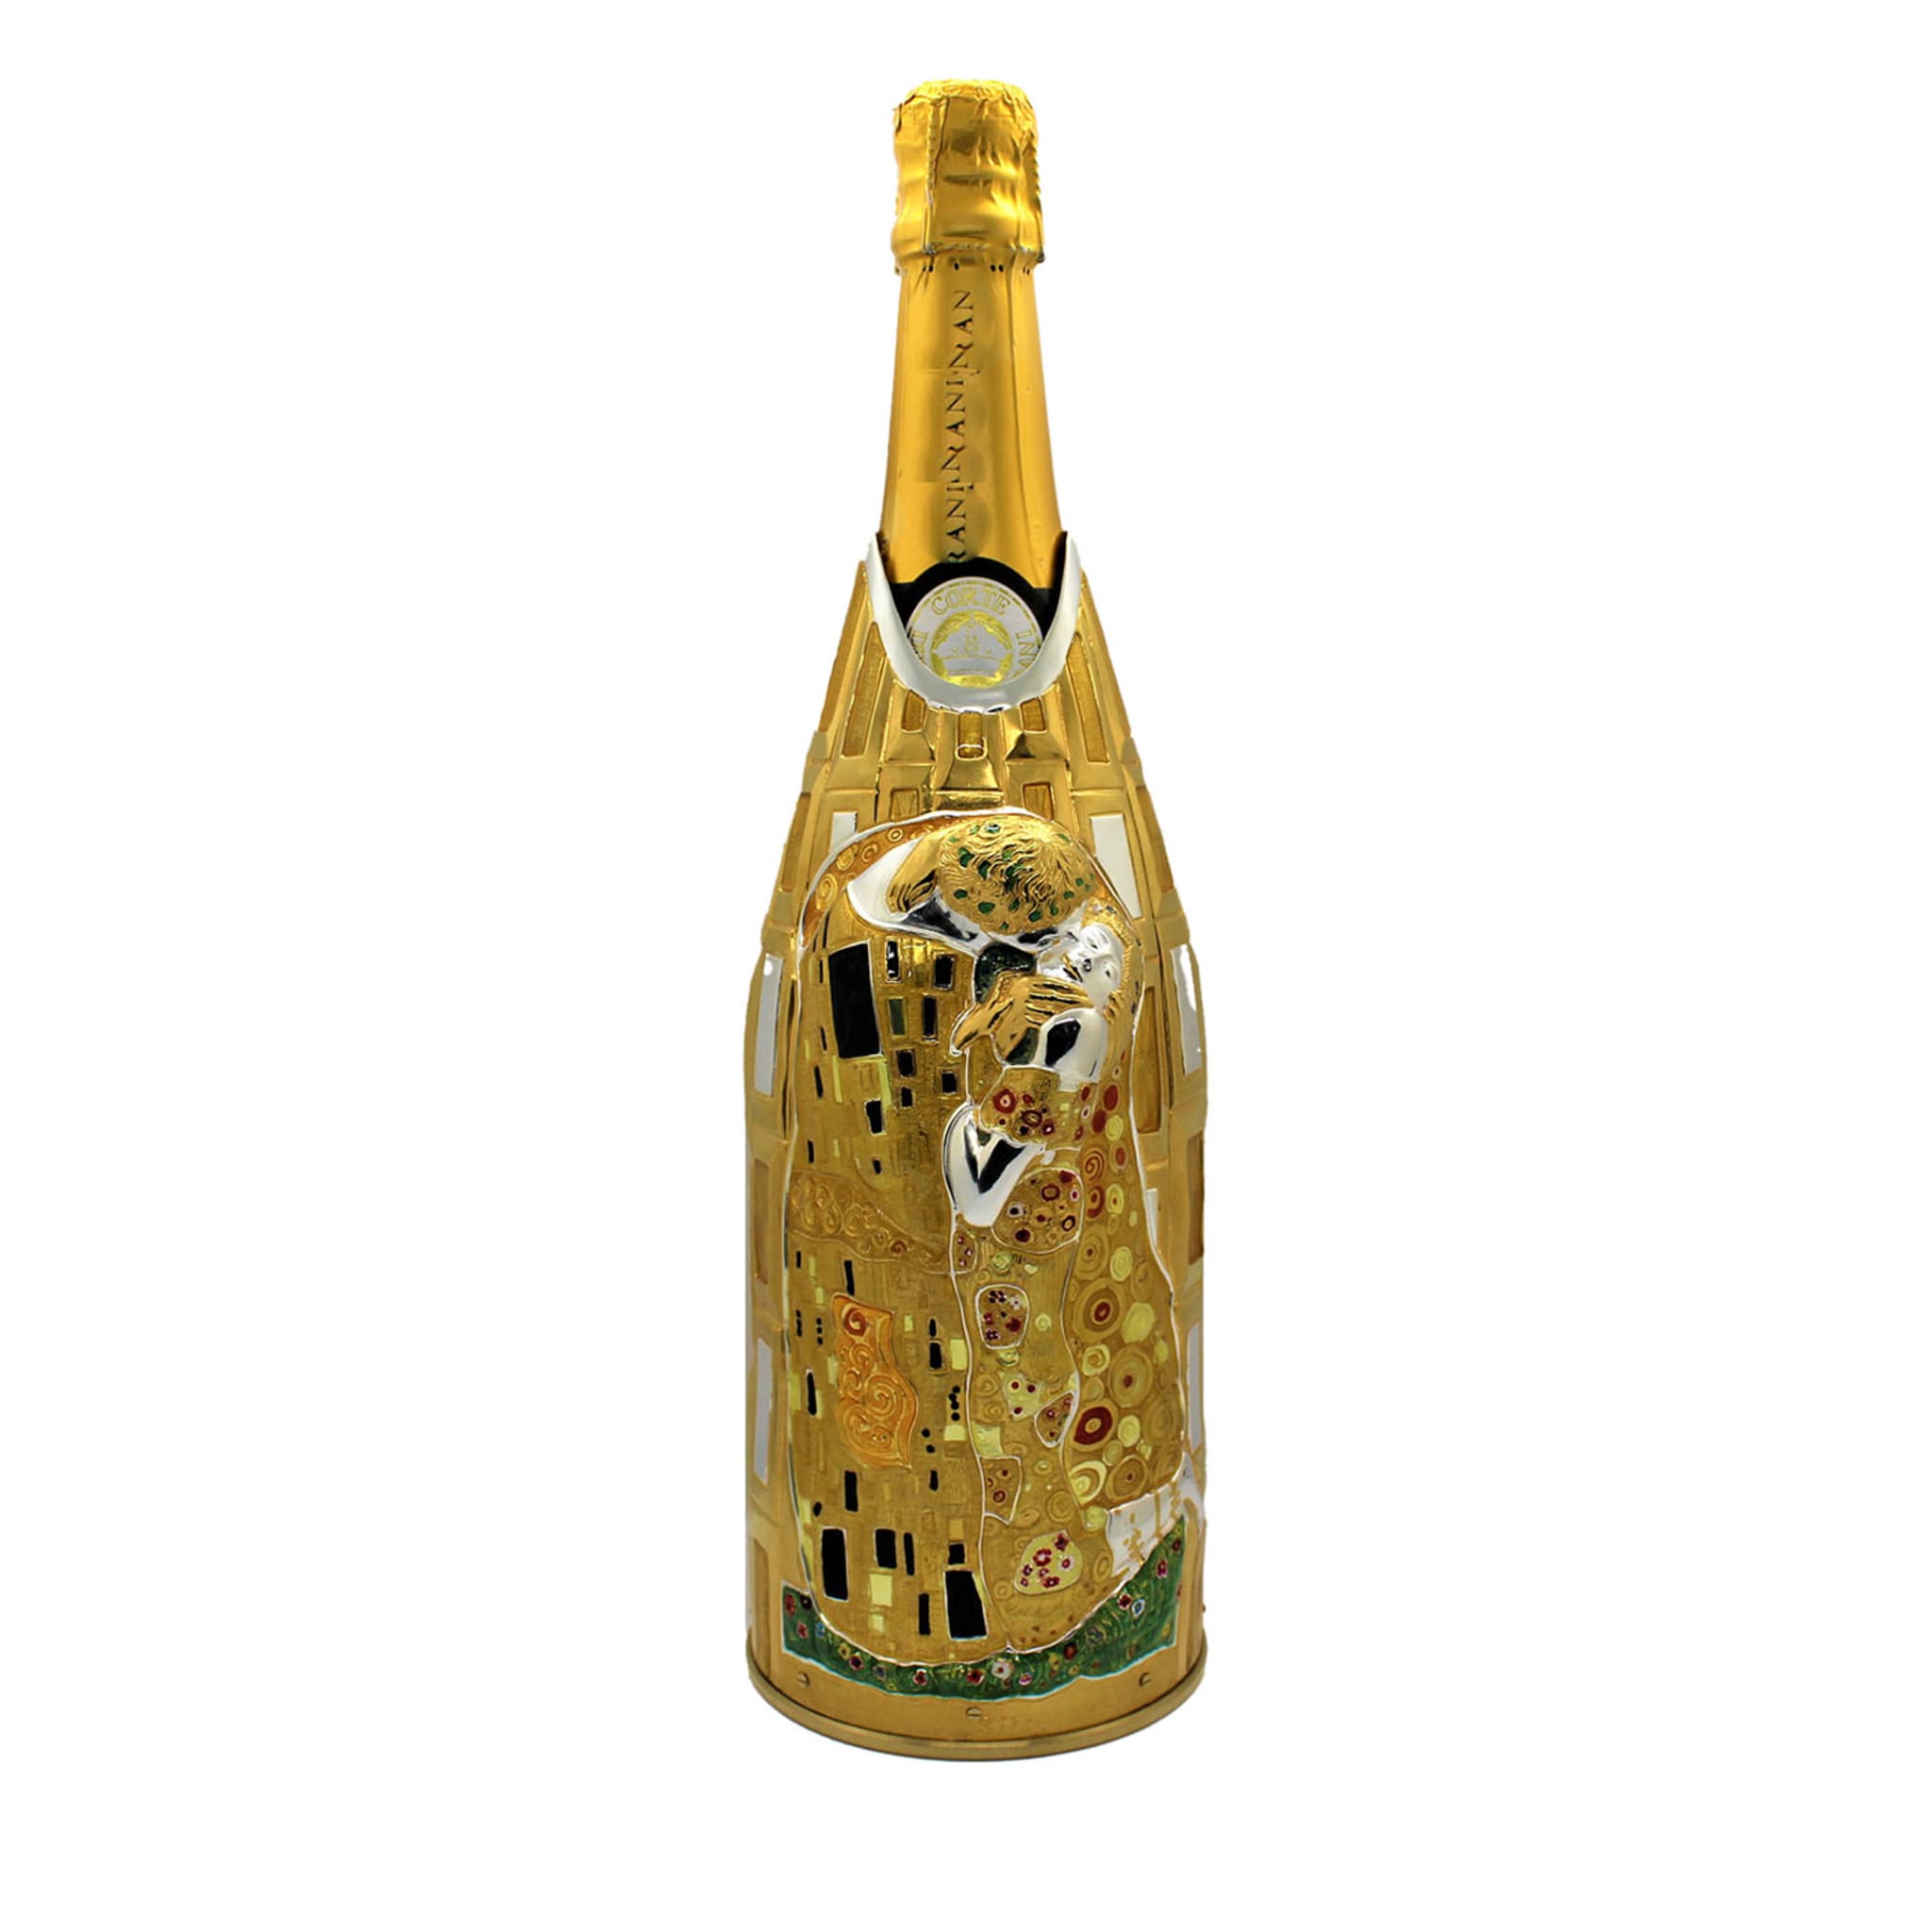 La copertina del Bacio Champagne - Vista principale